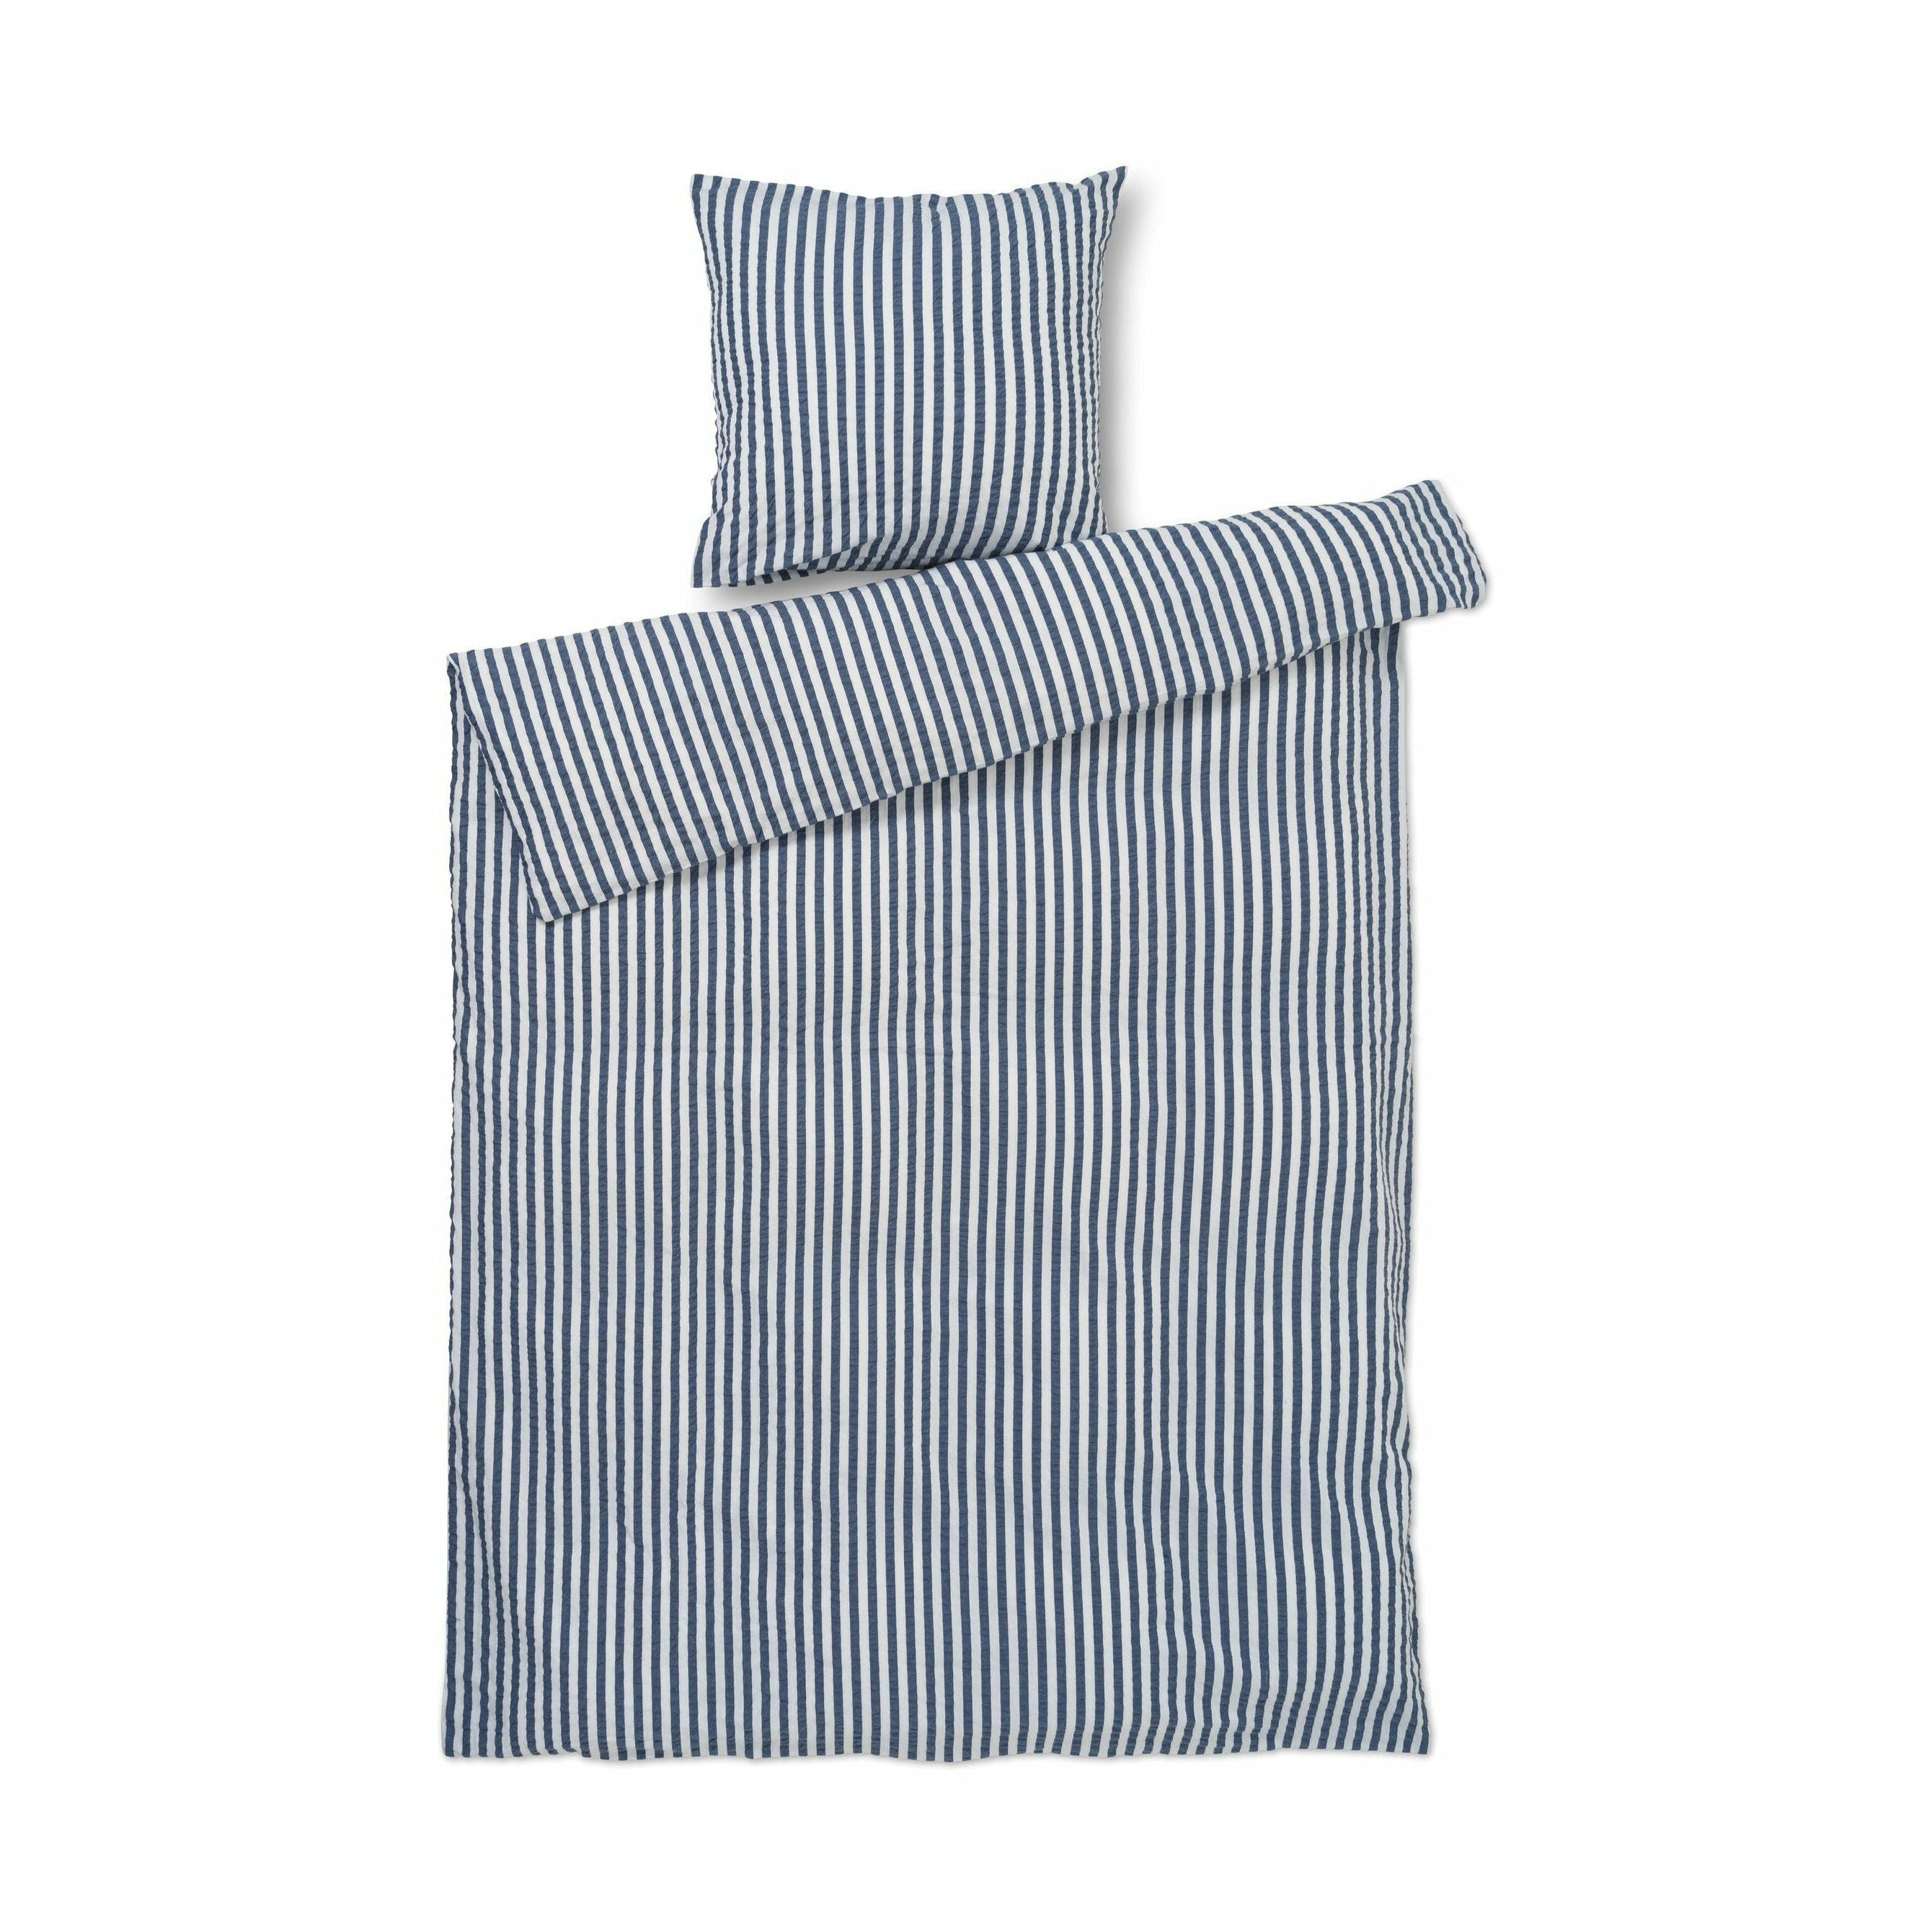 Juna Bæk & Bølge linjer sengelinned 140x200 cm, mørkeblå/hvid